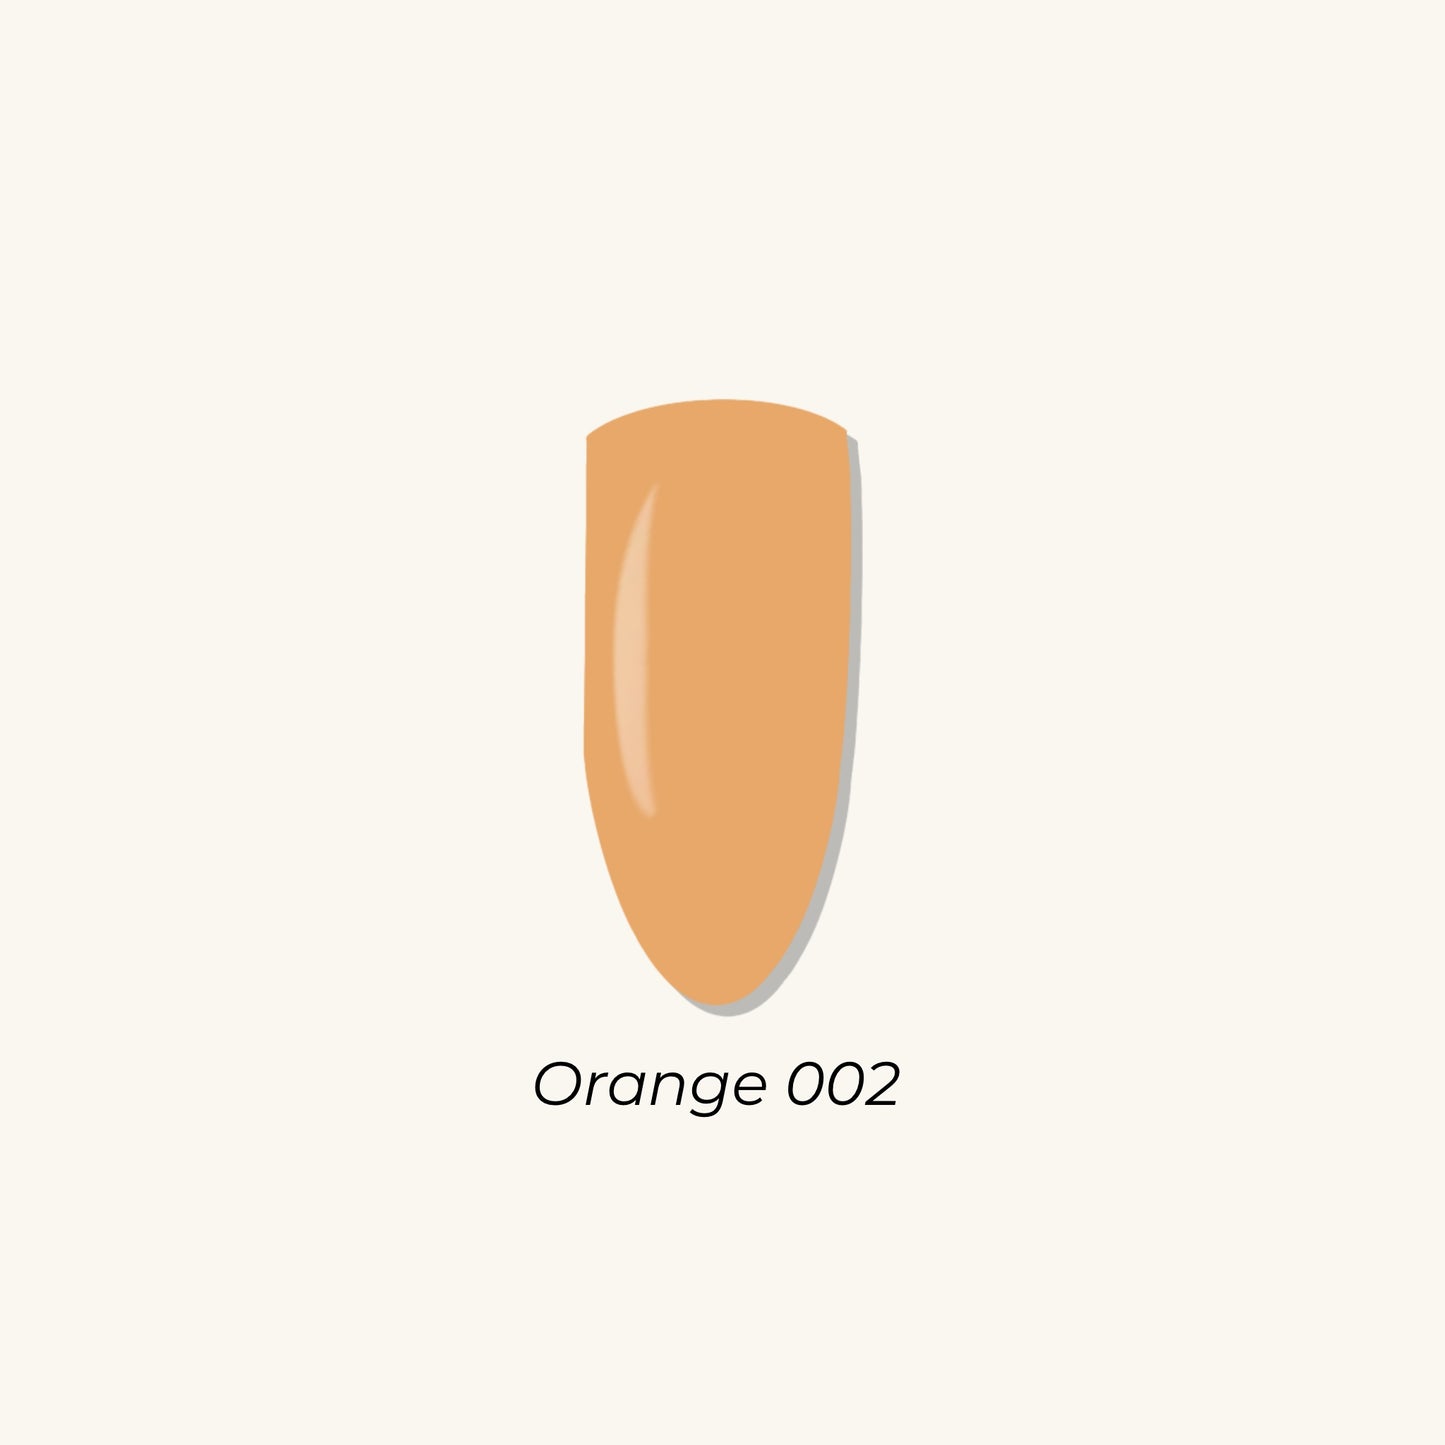 Orange 002